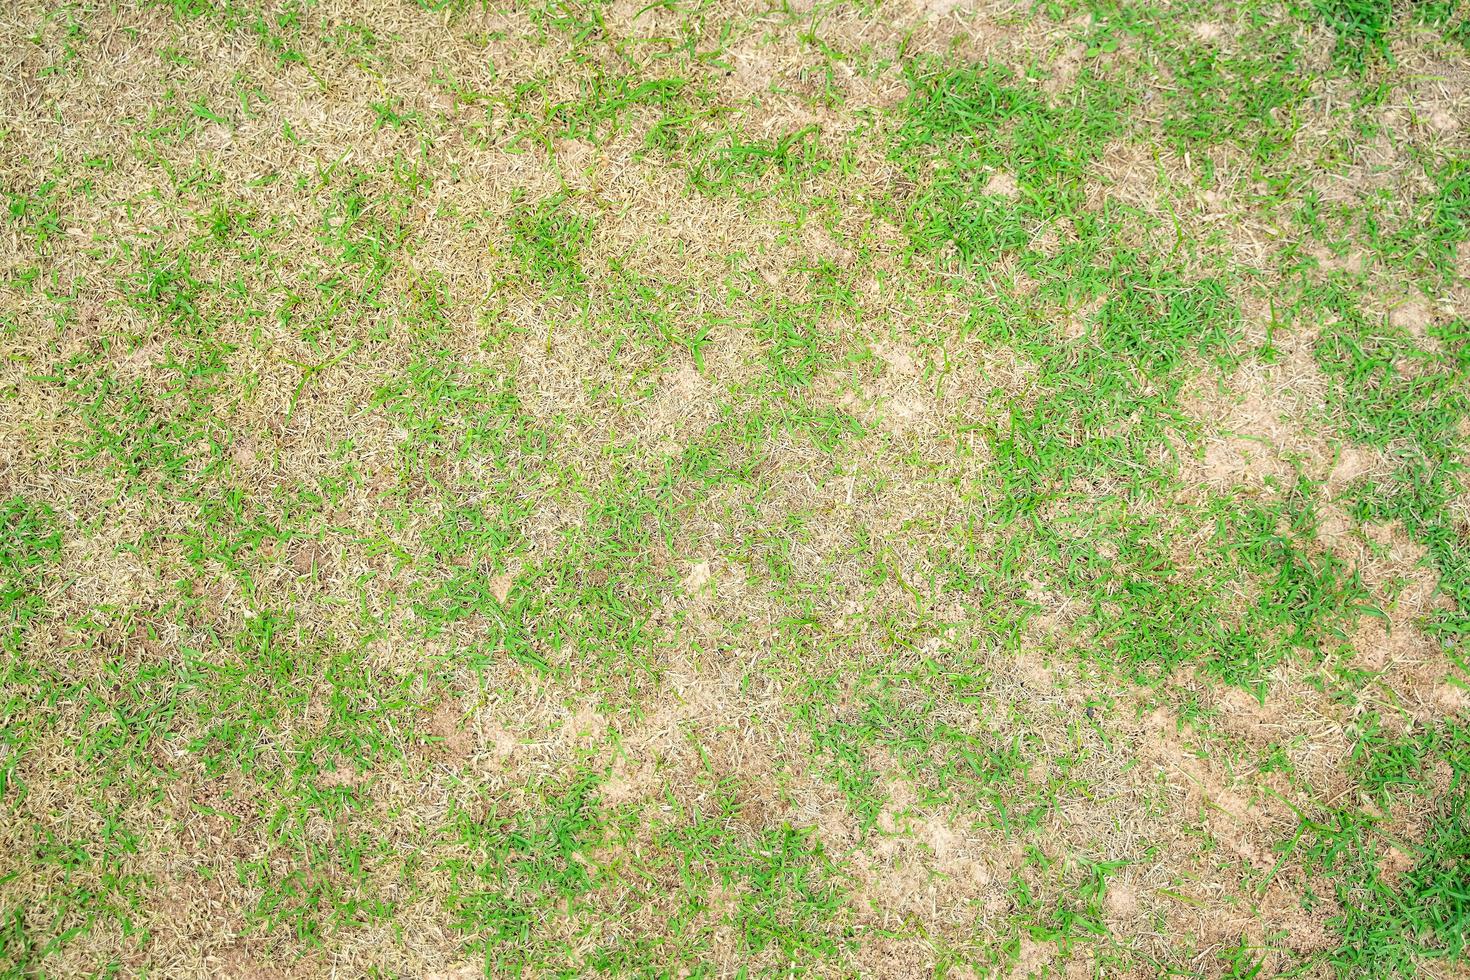 les feuilles d'herbe sèche passent du vert au brun mort dans un cercle fond de texture de pelouse herbe sèche morte. photo